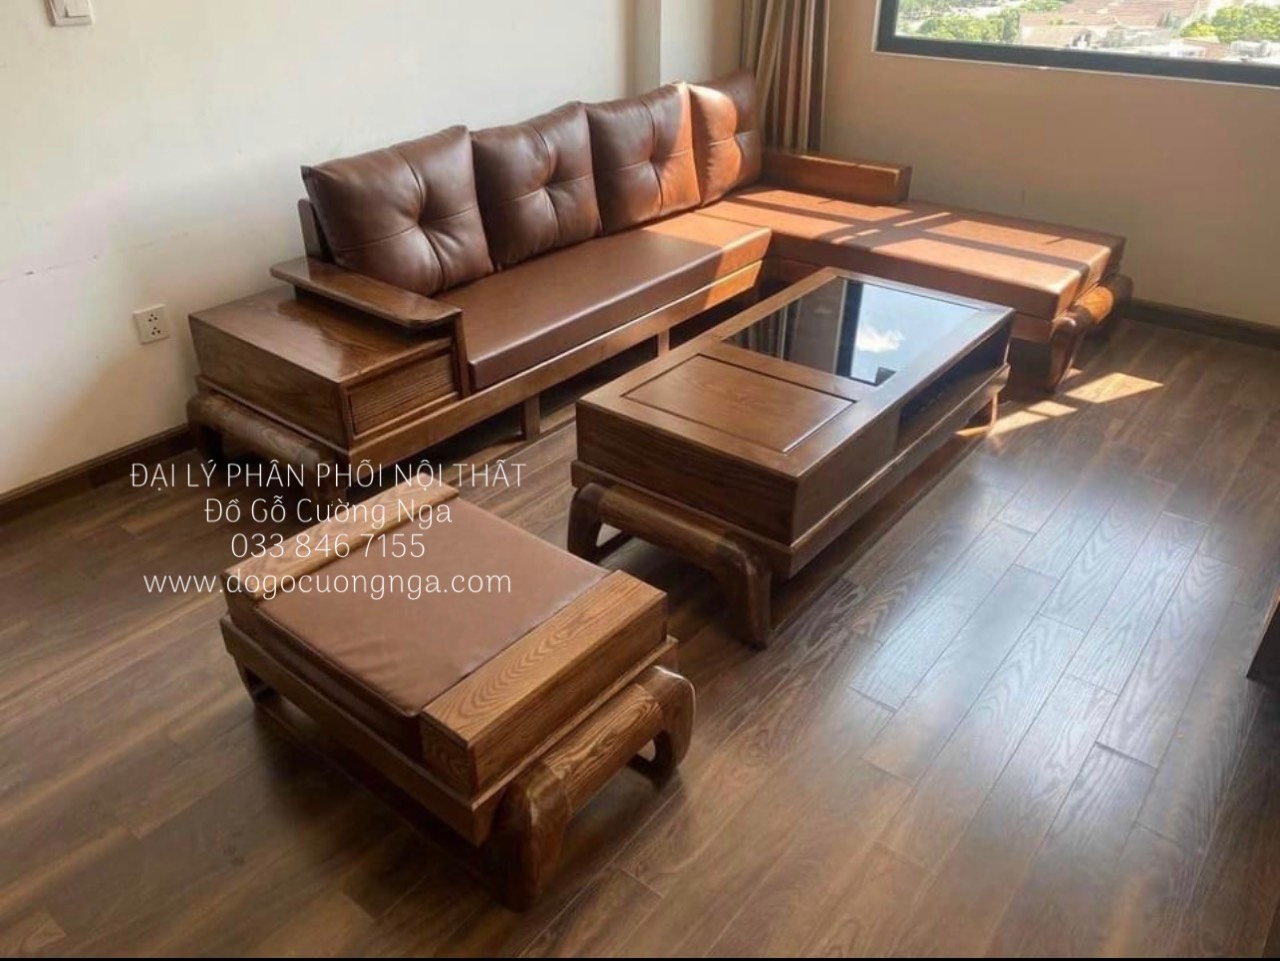 Bàn ghế Sofa gỗ phòng khách hiện đại: Cập nhật không gian sống của bạn với bàn ghế sofa gỗ phòng khách hiện đại. Thiết kế đơn giản nhưng trang trọng, giúp cho sản phẩm này vừa phù hợp với nhiều phong cách trang trí khác nhau. Chất liệu gỗ cao cấp được sử dụng để sản xuất bàn ghế sofa, giúp cho sản phẩm bền đẹp và có khả năng chịu lực tốt.